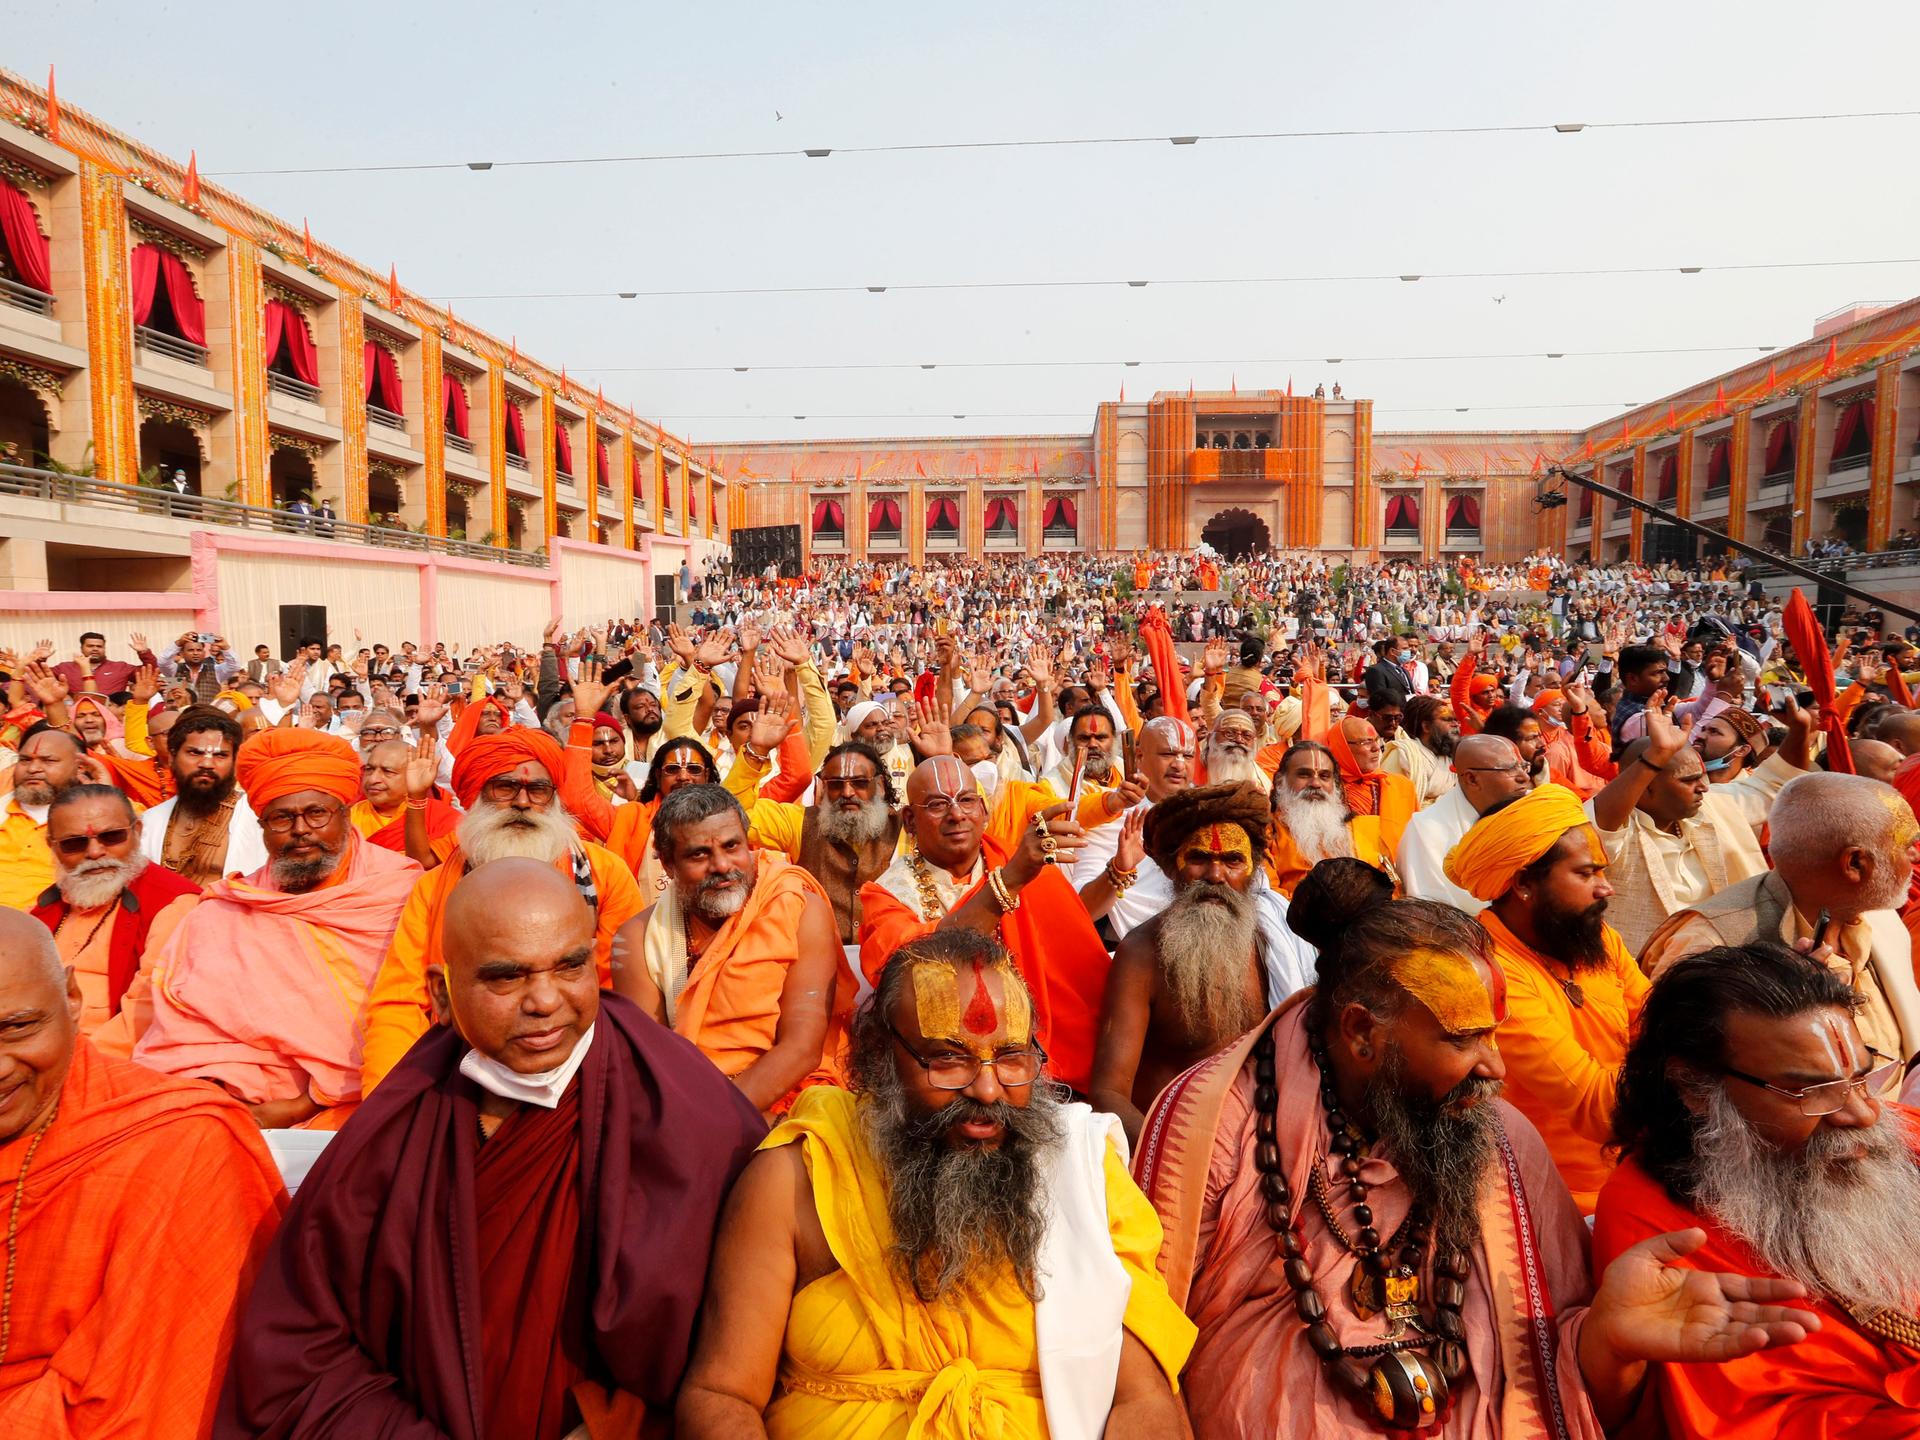 Hindu-Männer in langen Gewändern in Gelb-, Orange- und Rottönen sitzen dicht gedrängt auf einem großen Hof.